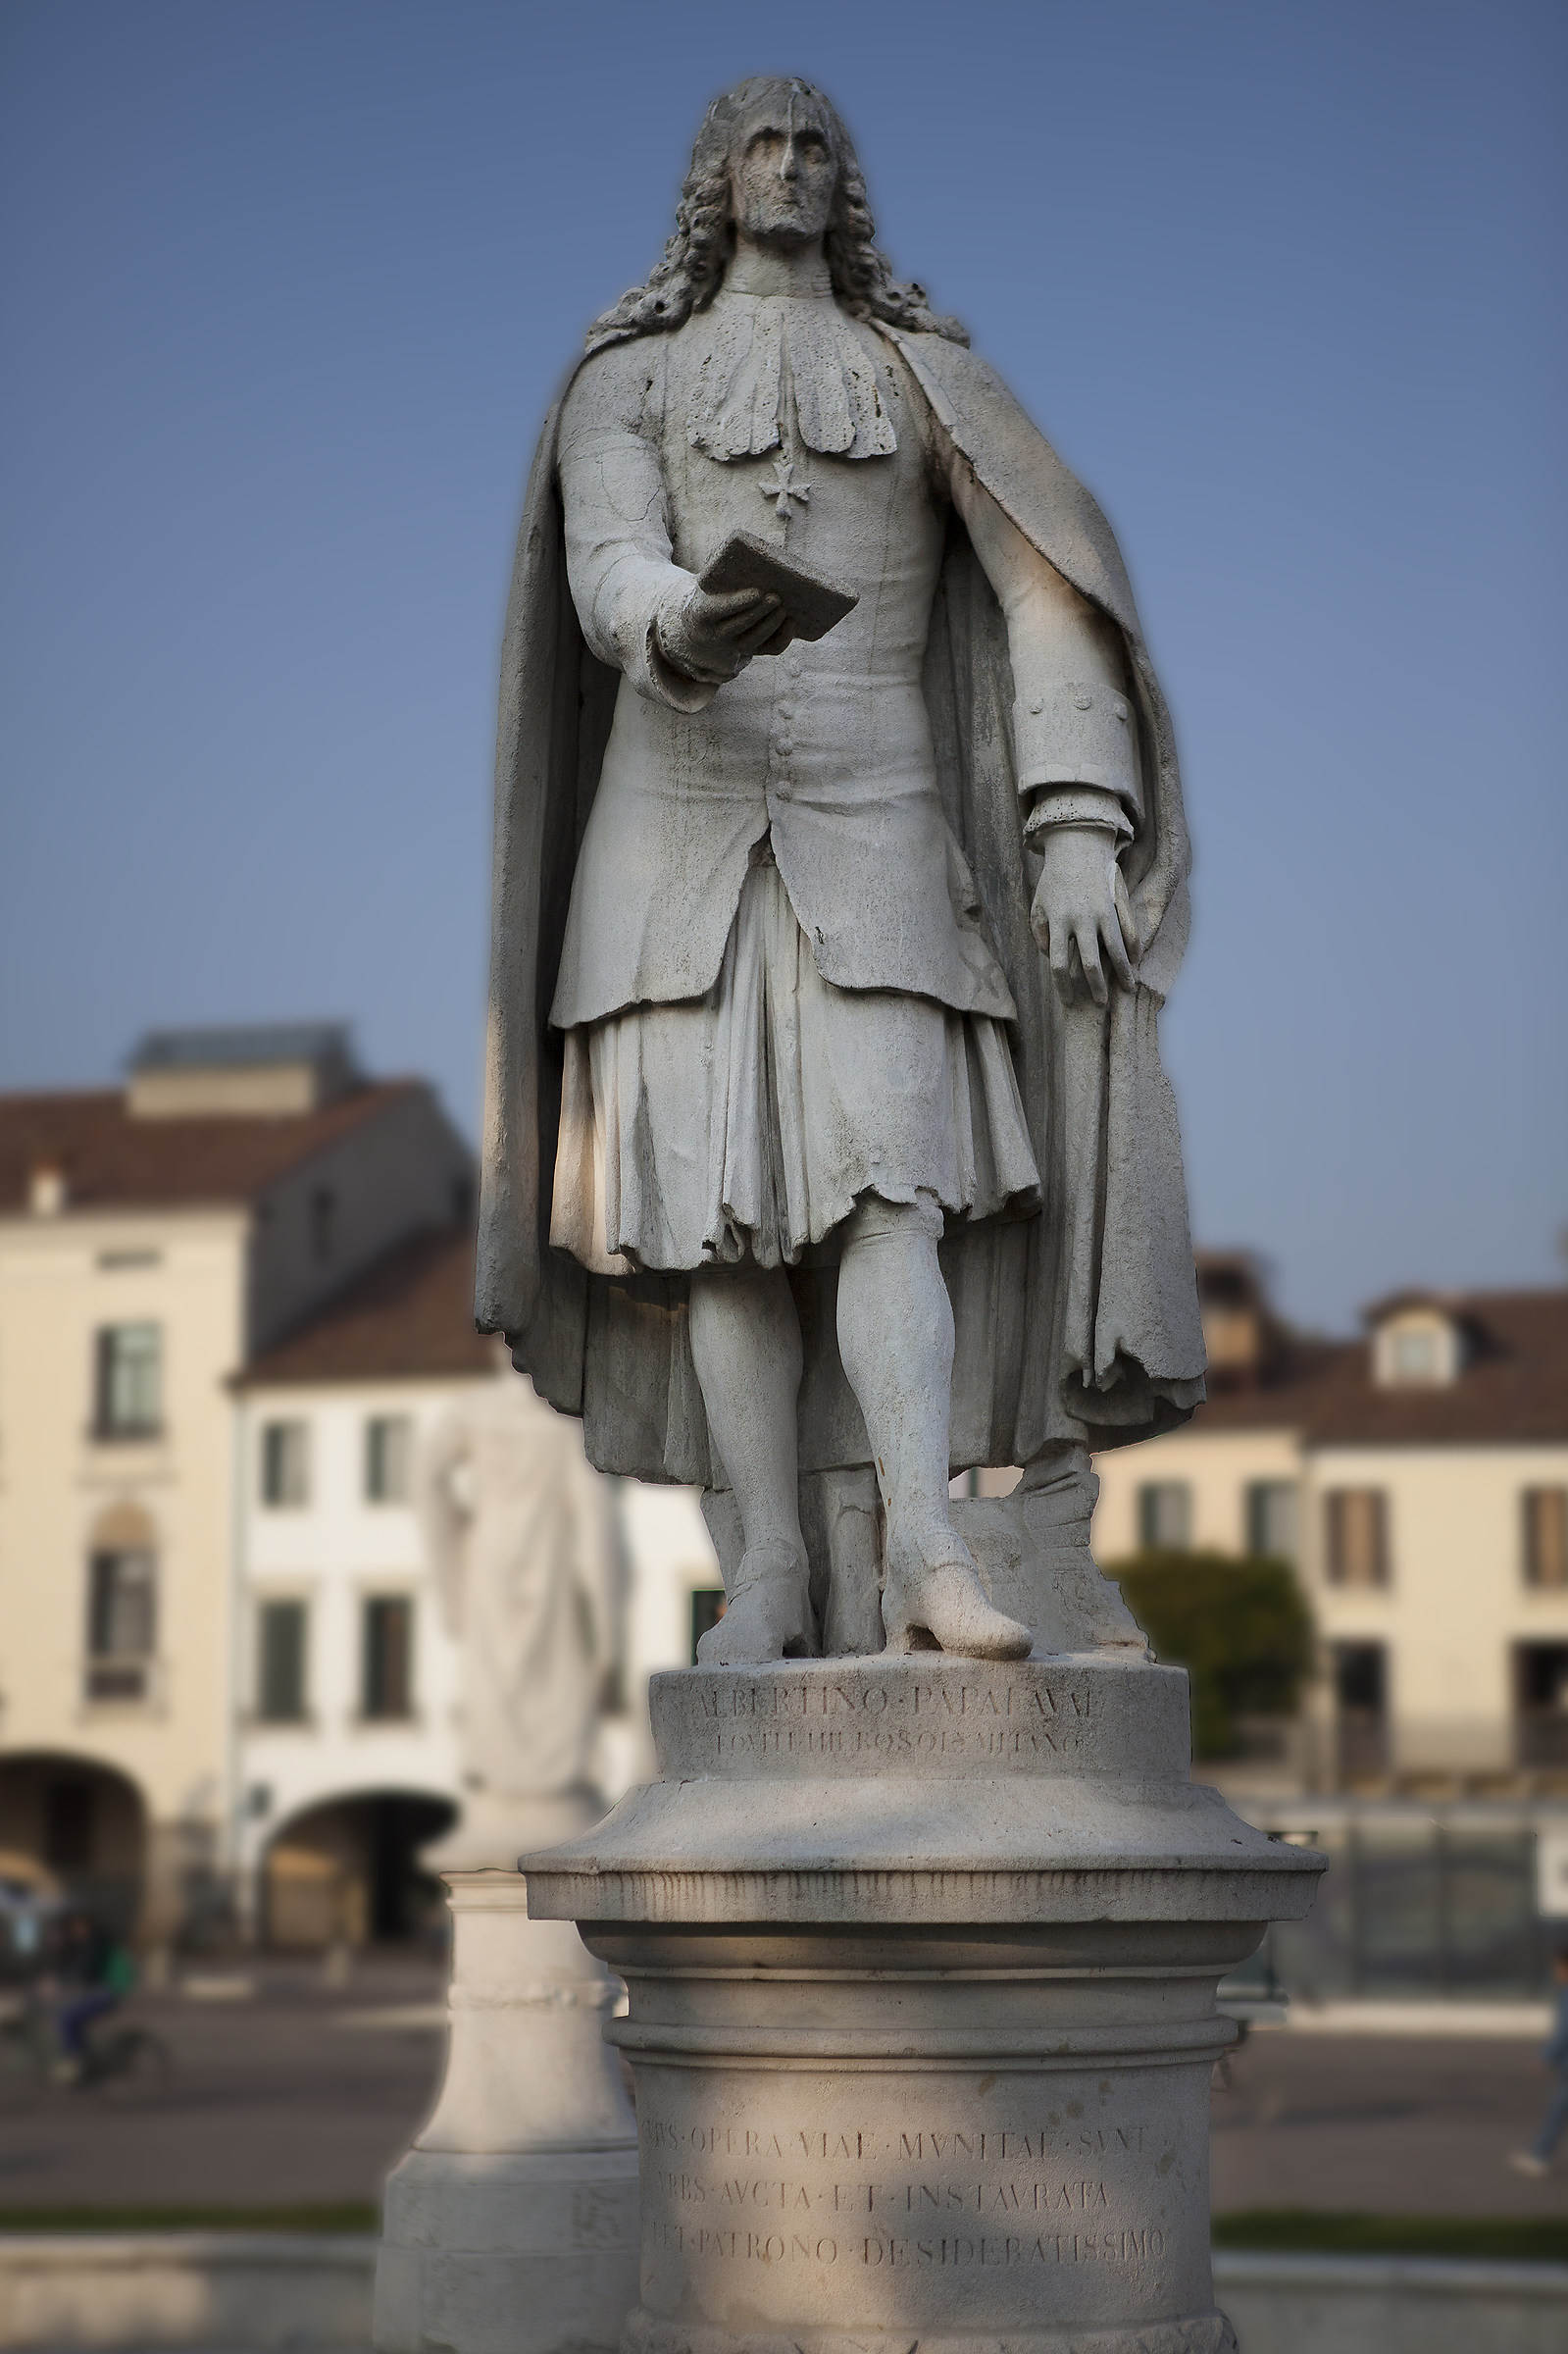 The statue (Albertino Papafava)...